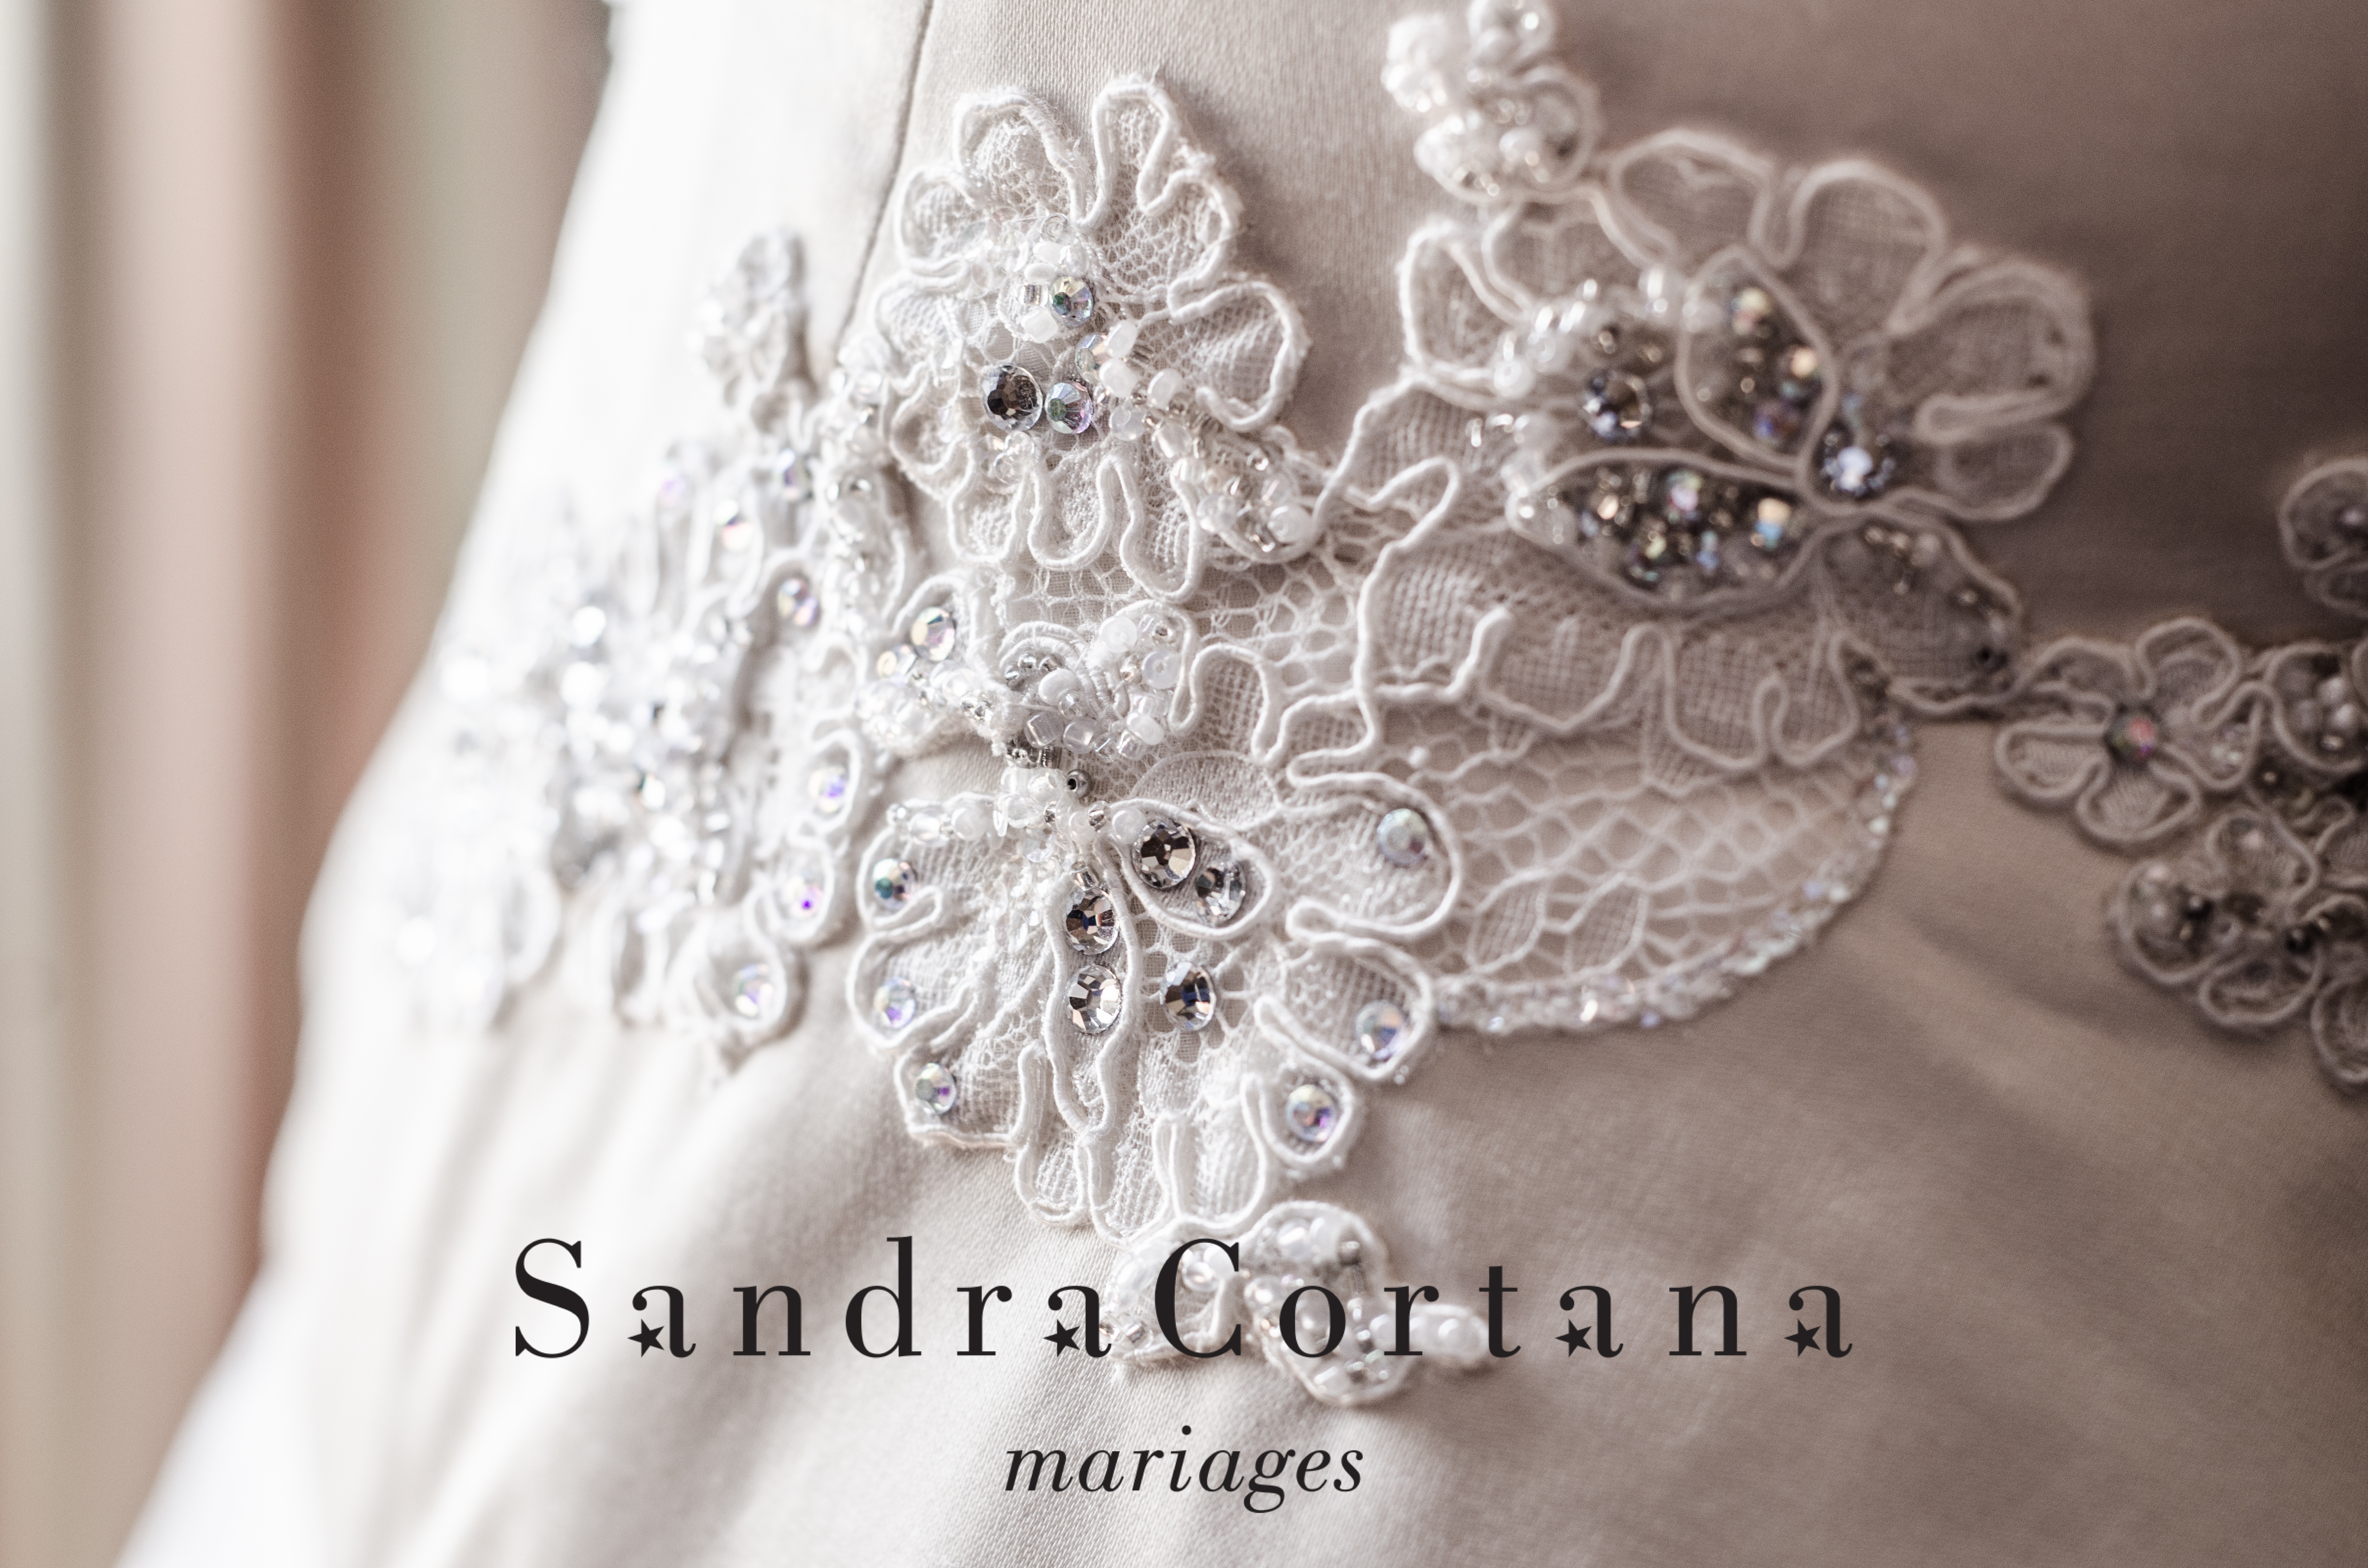 Le Blog “Sandra Cortana mariages” nouvelle version, c’est ici !